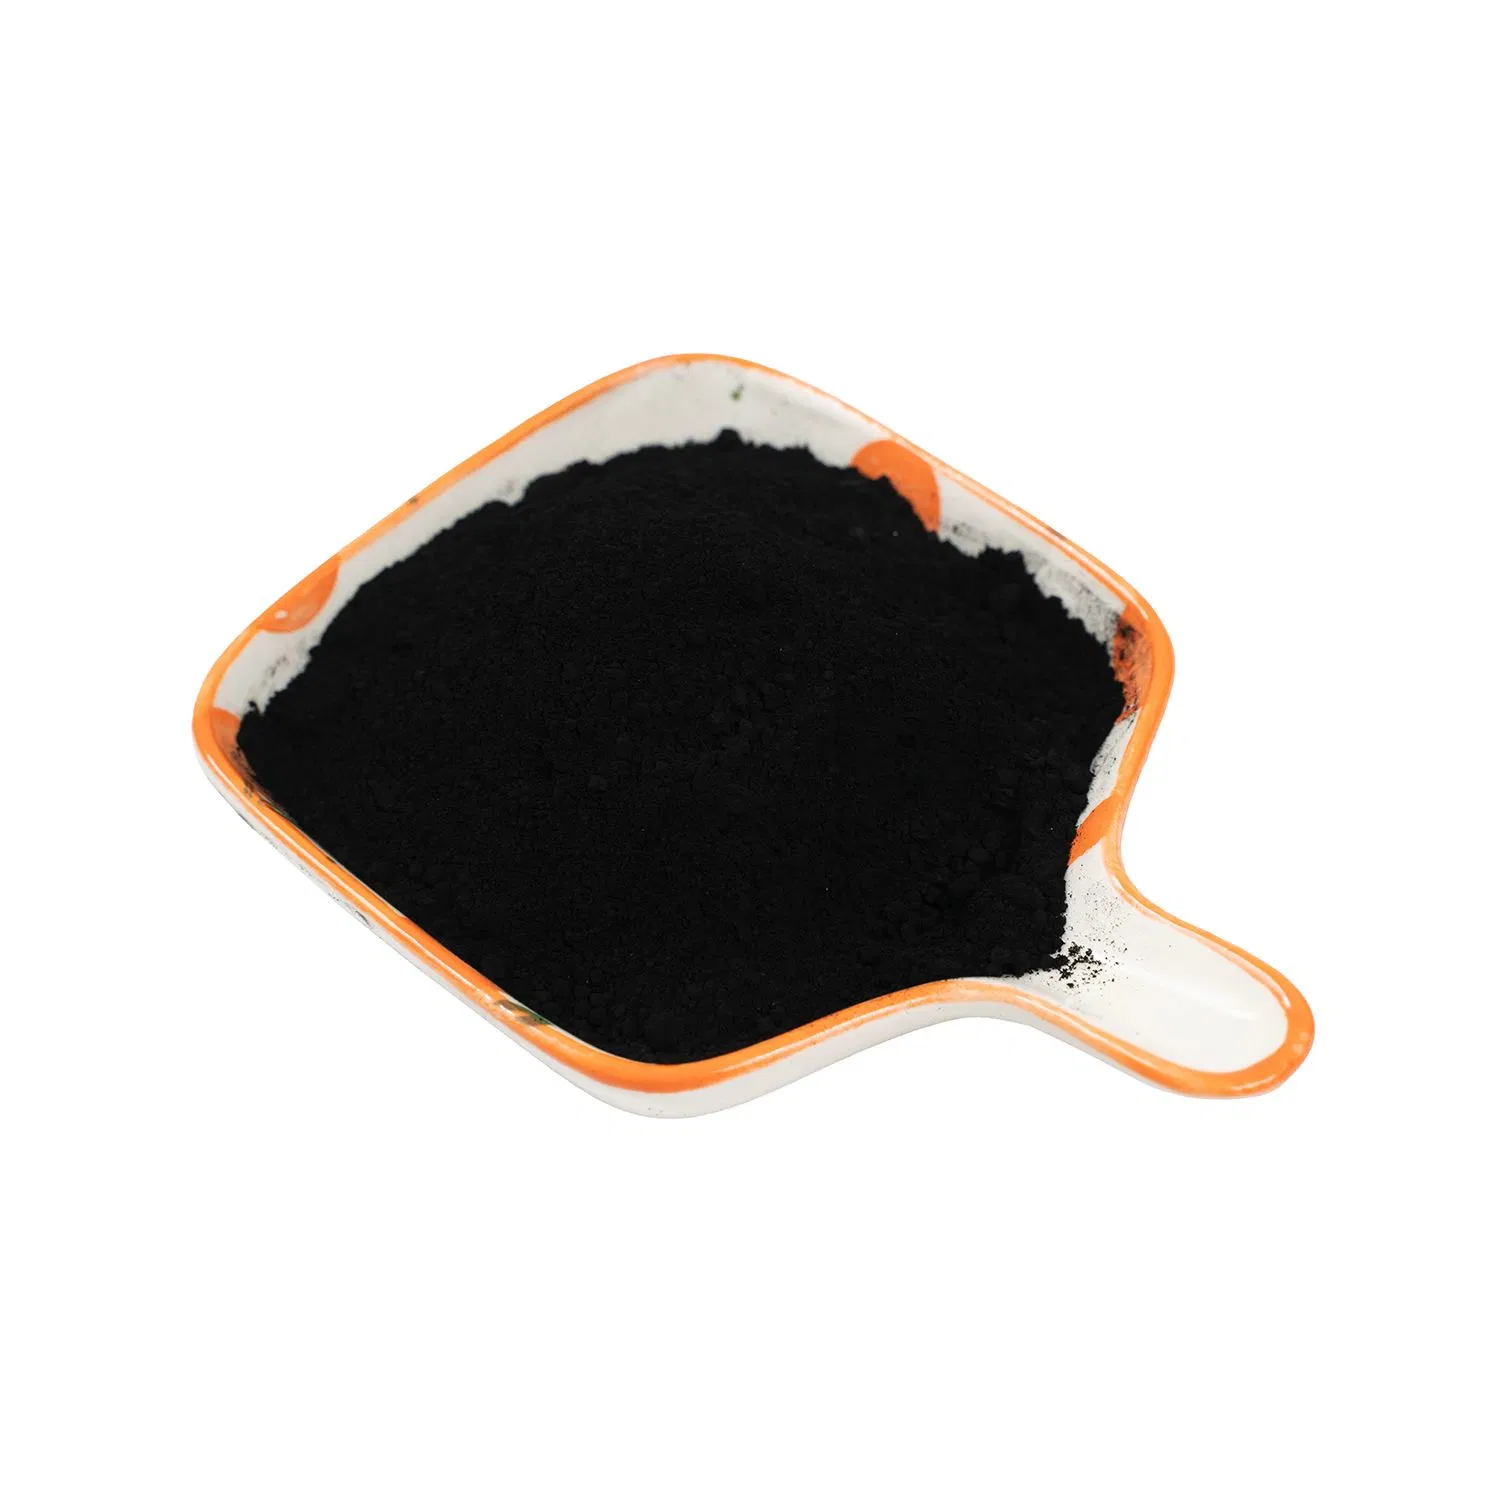 Carbon Black Low Price N330 N220 N550 N660 for Rubber Industry